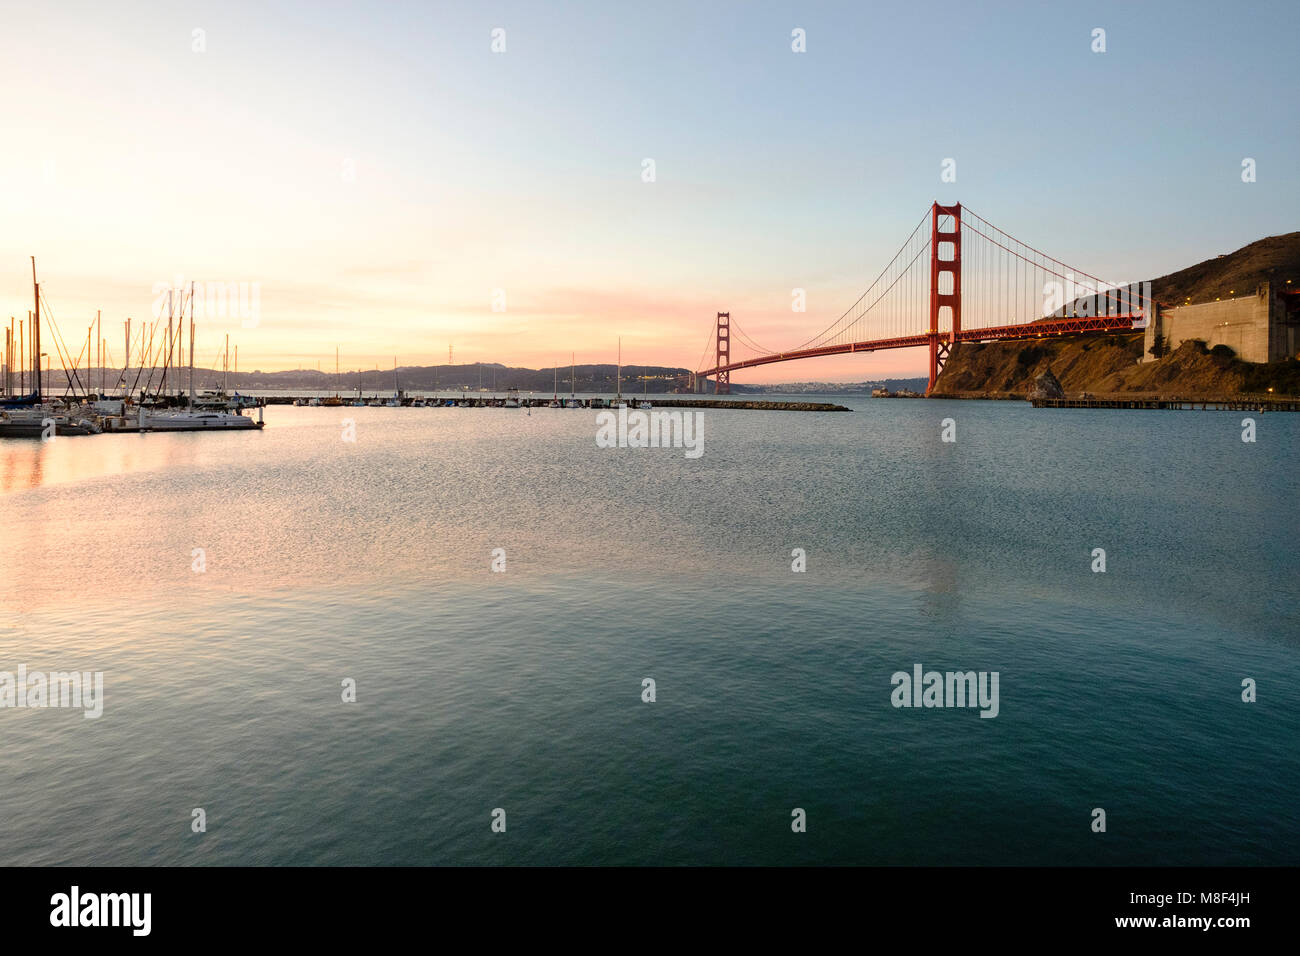 États-unis, Californie, San Francisco, Golden Gate Bridge at sunset Banque D'Images